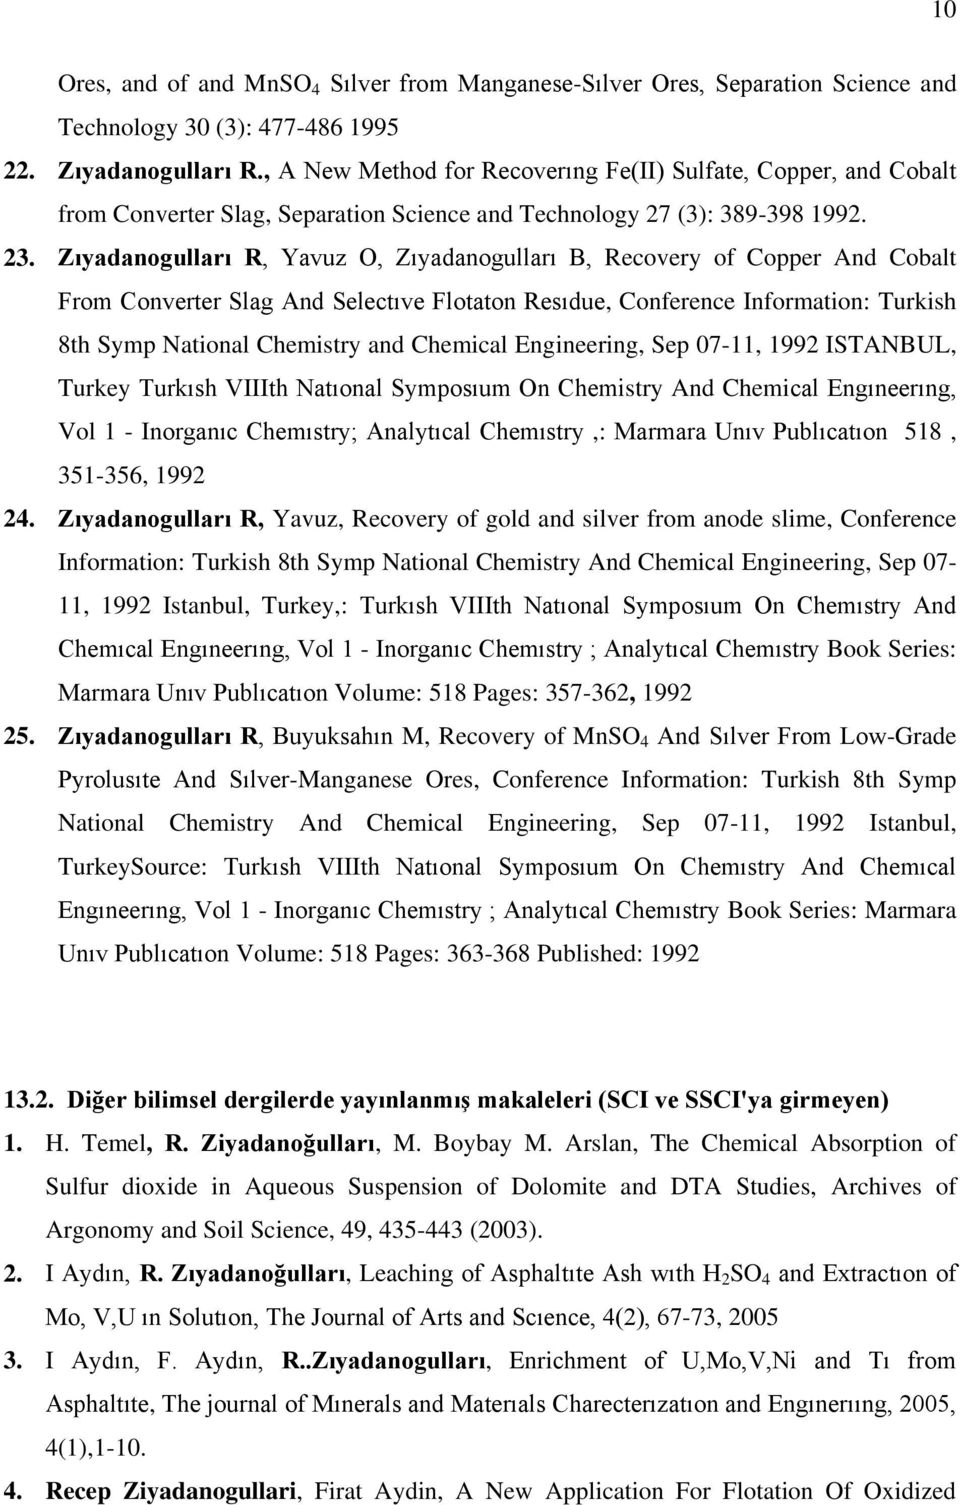 Zıyadanogulları R, Yavuz O, Zıyadanogulları B, Recovery of Copper And Cobalt From Converter Slag And Selectıve Flotaton Resıdue, Conference Information: Turkish 8th Symp National Chemistry and